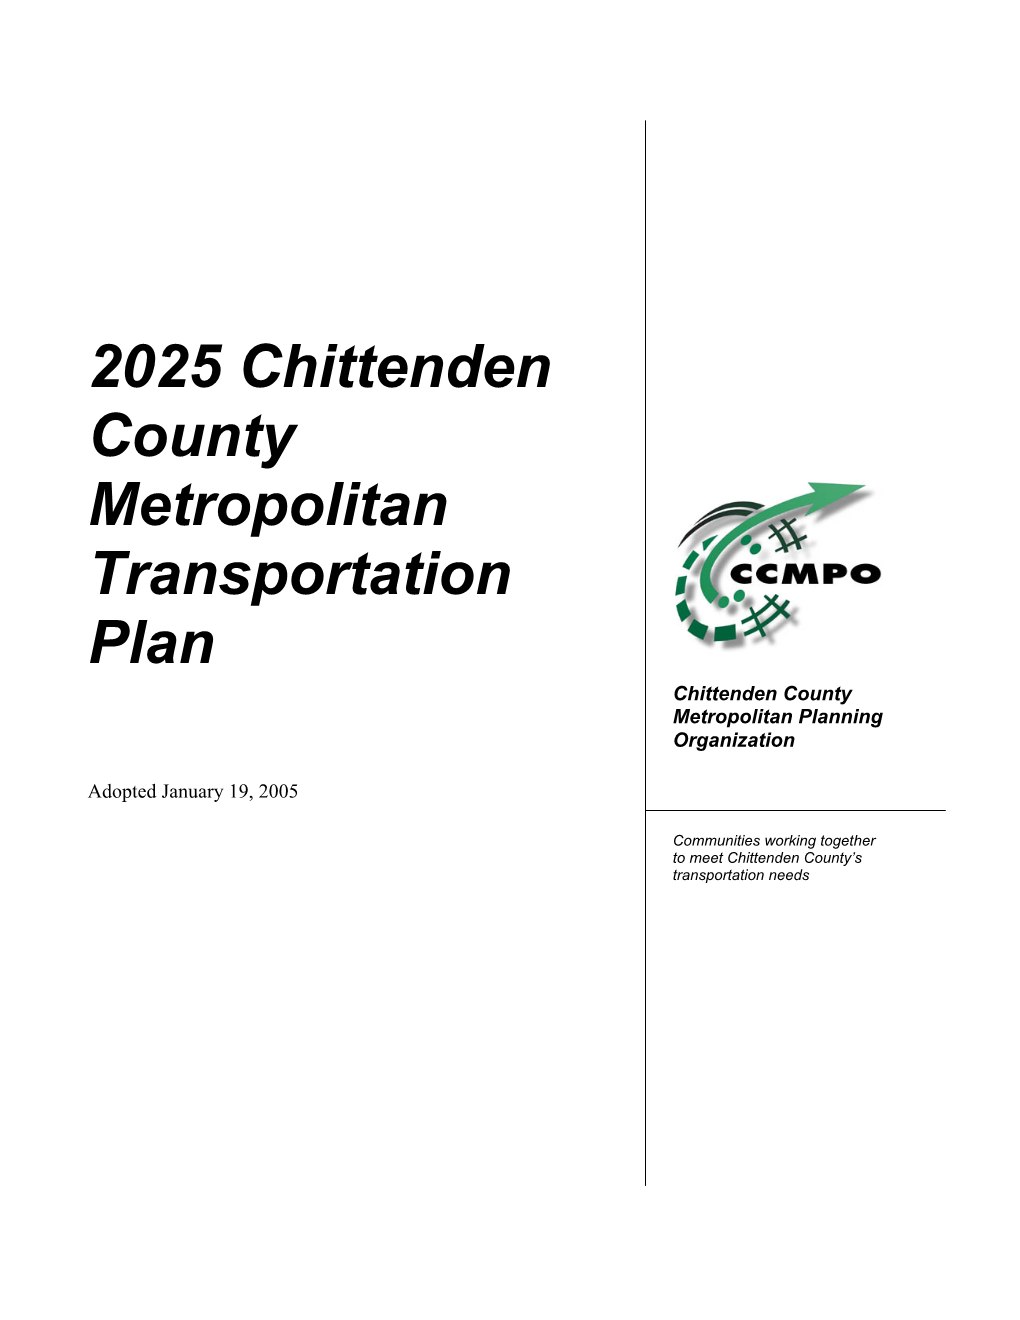 CCMPO 2025 Metropolitan Transportation Plan